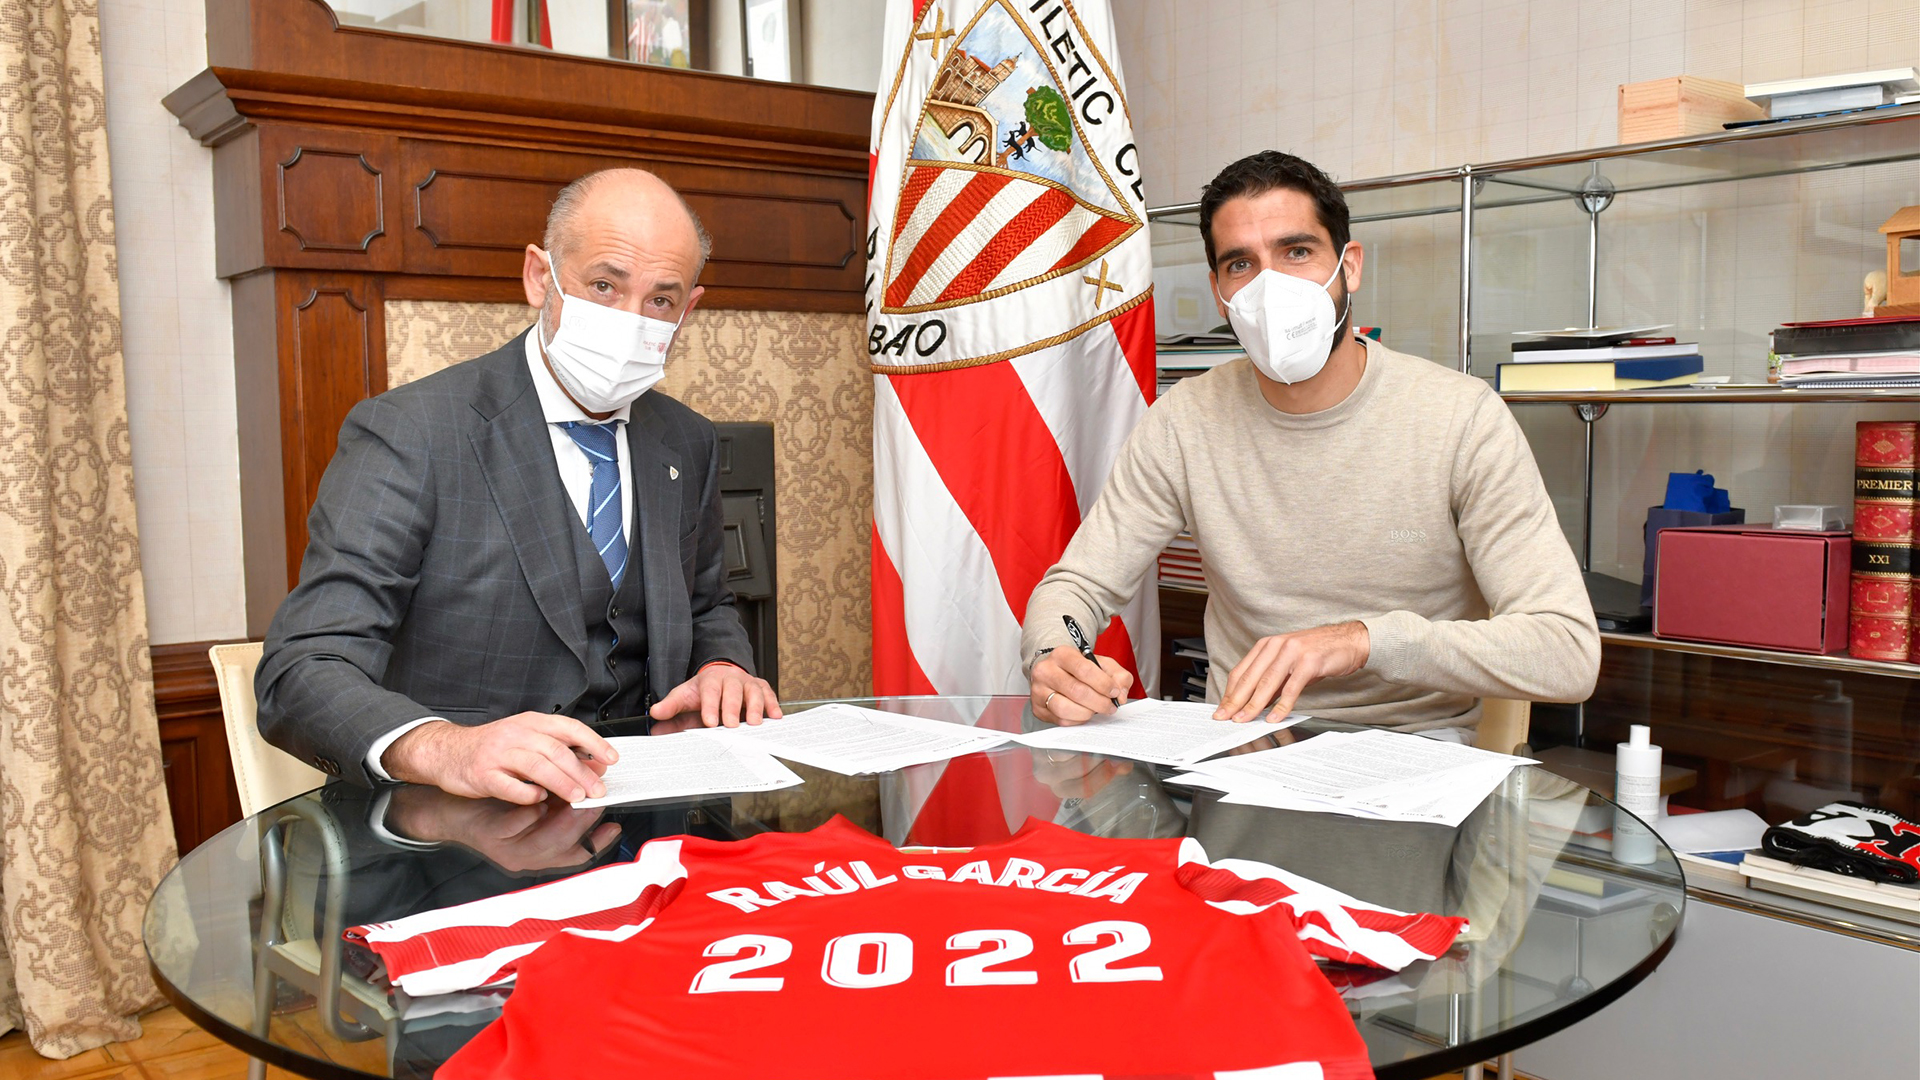 Raúl García signs contract extension until 2022